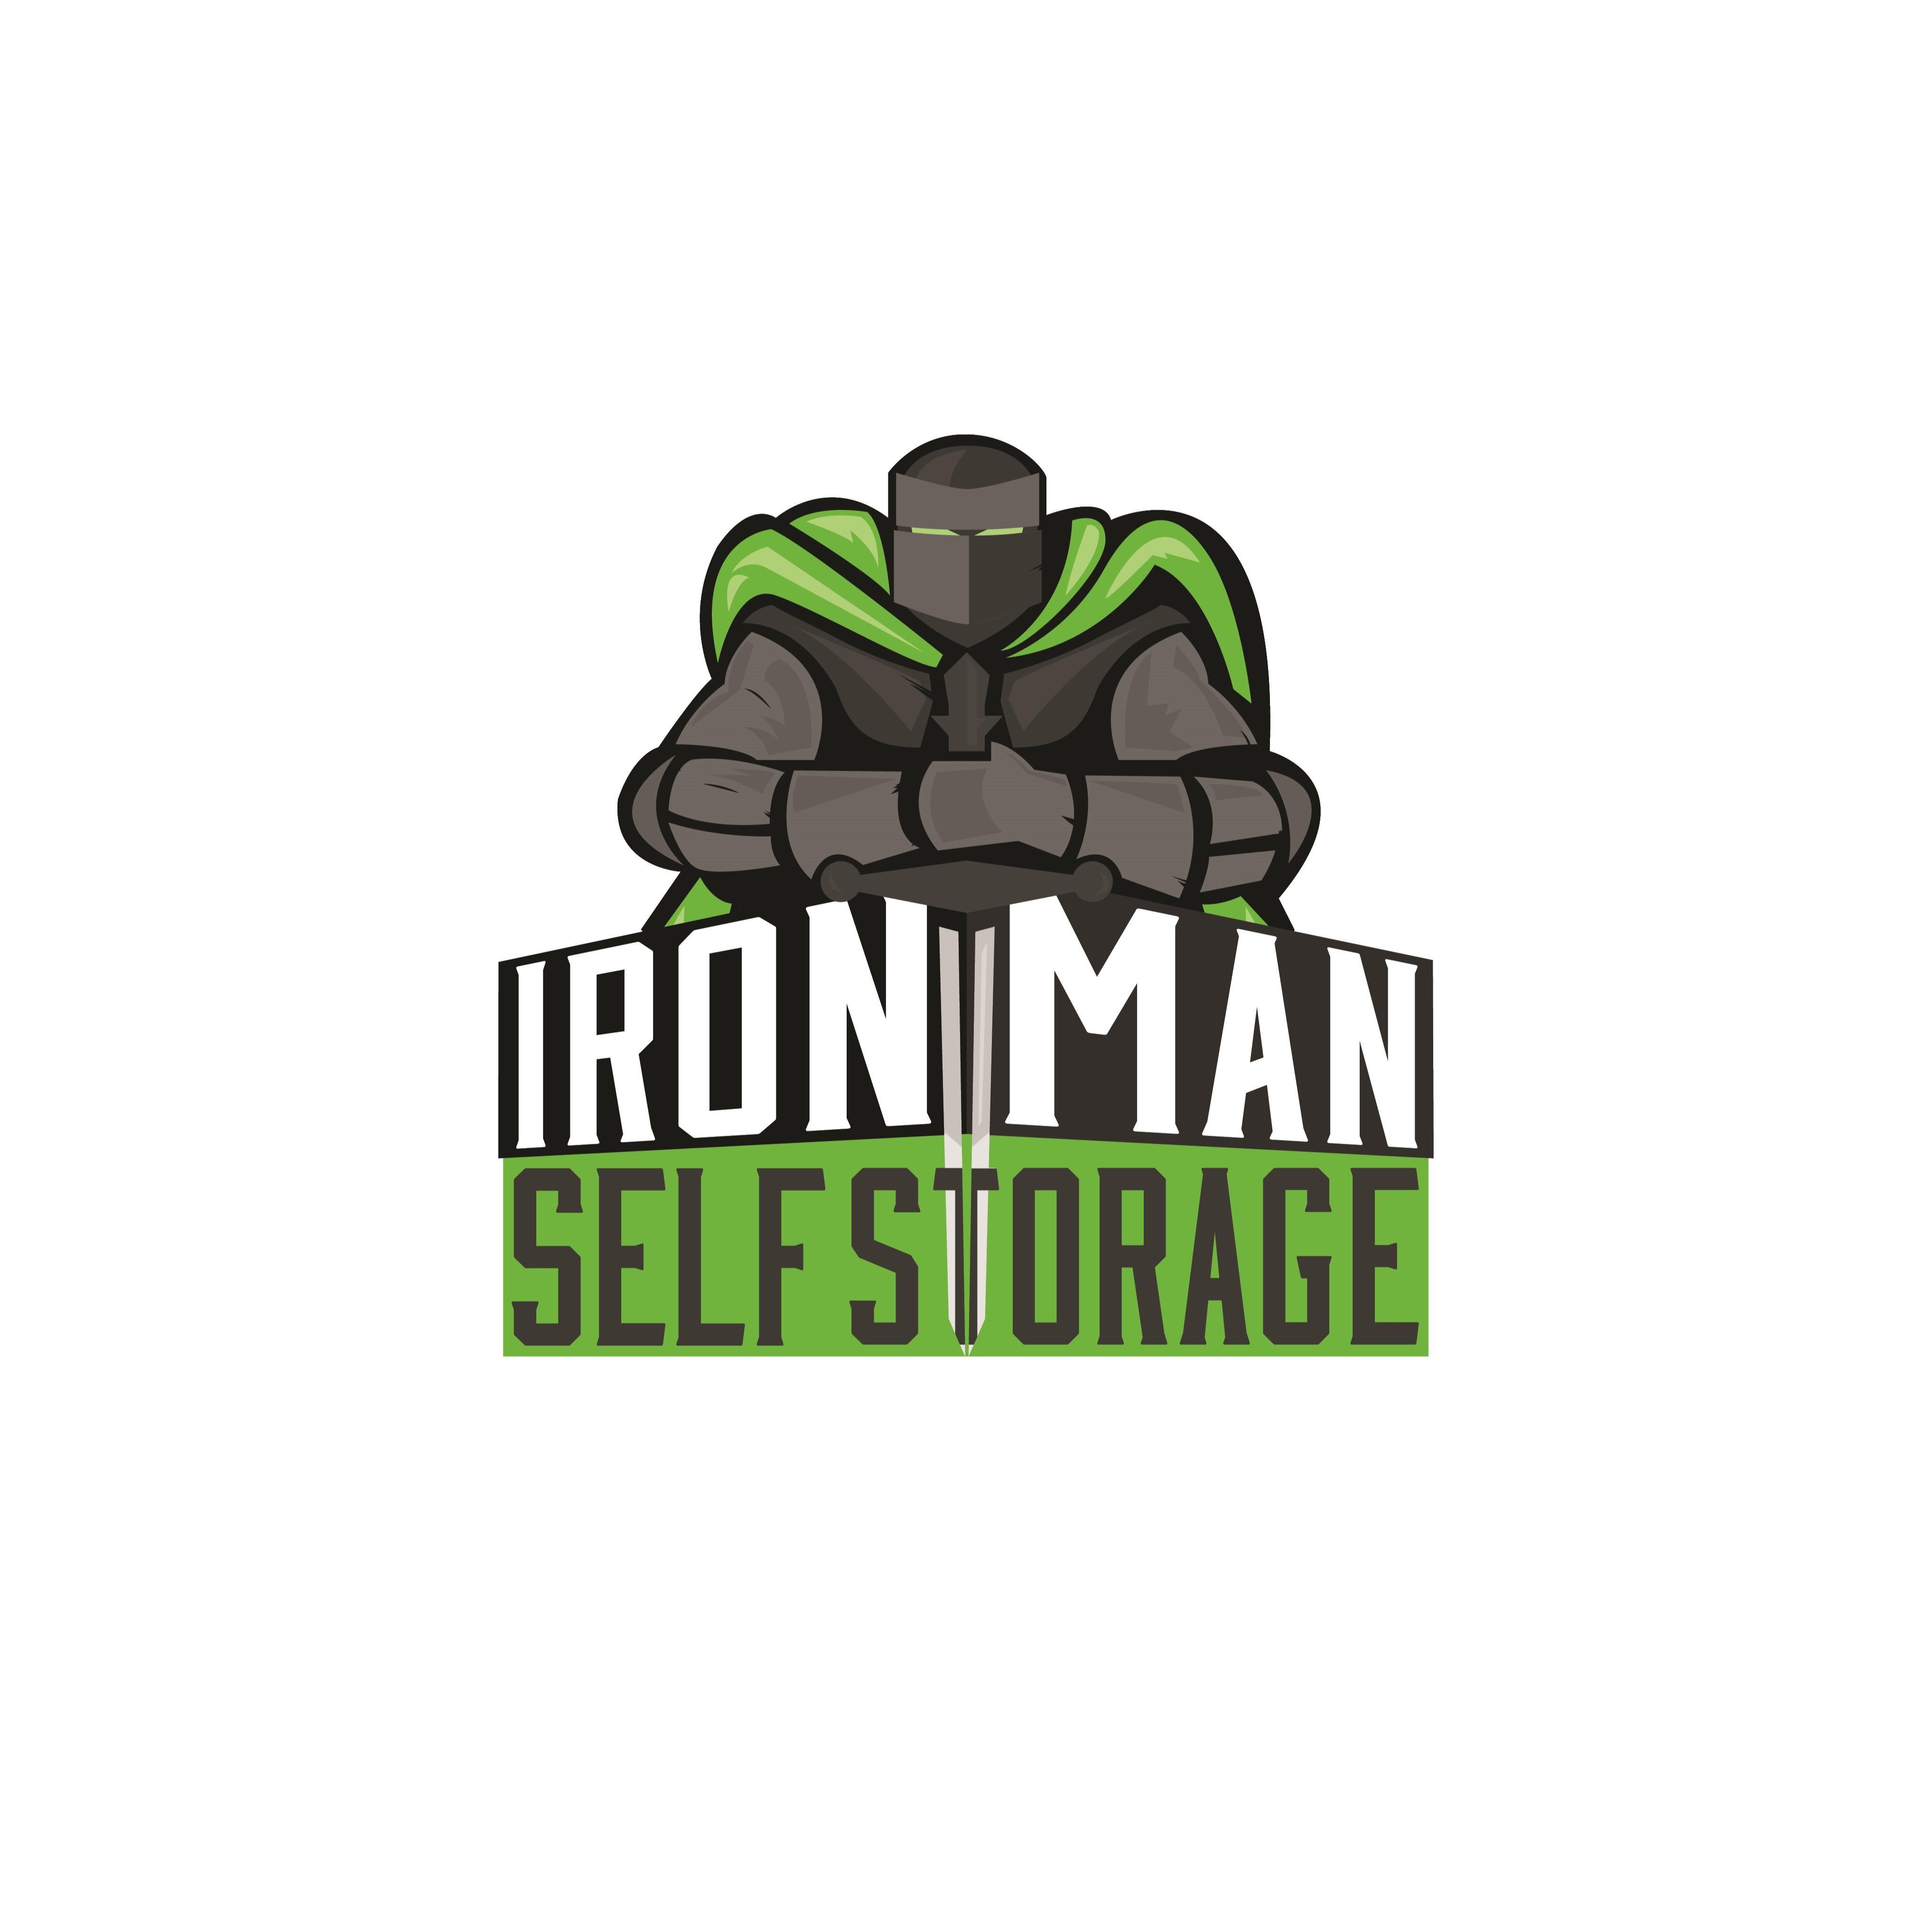 Iron Man Self Storage